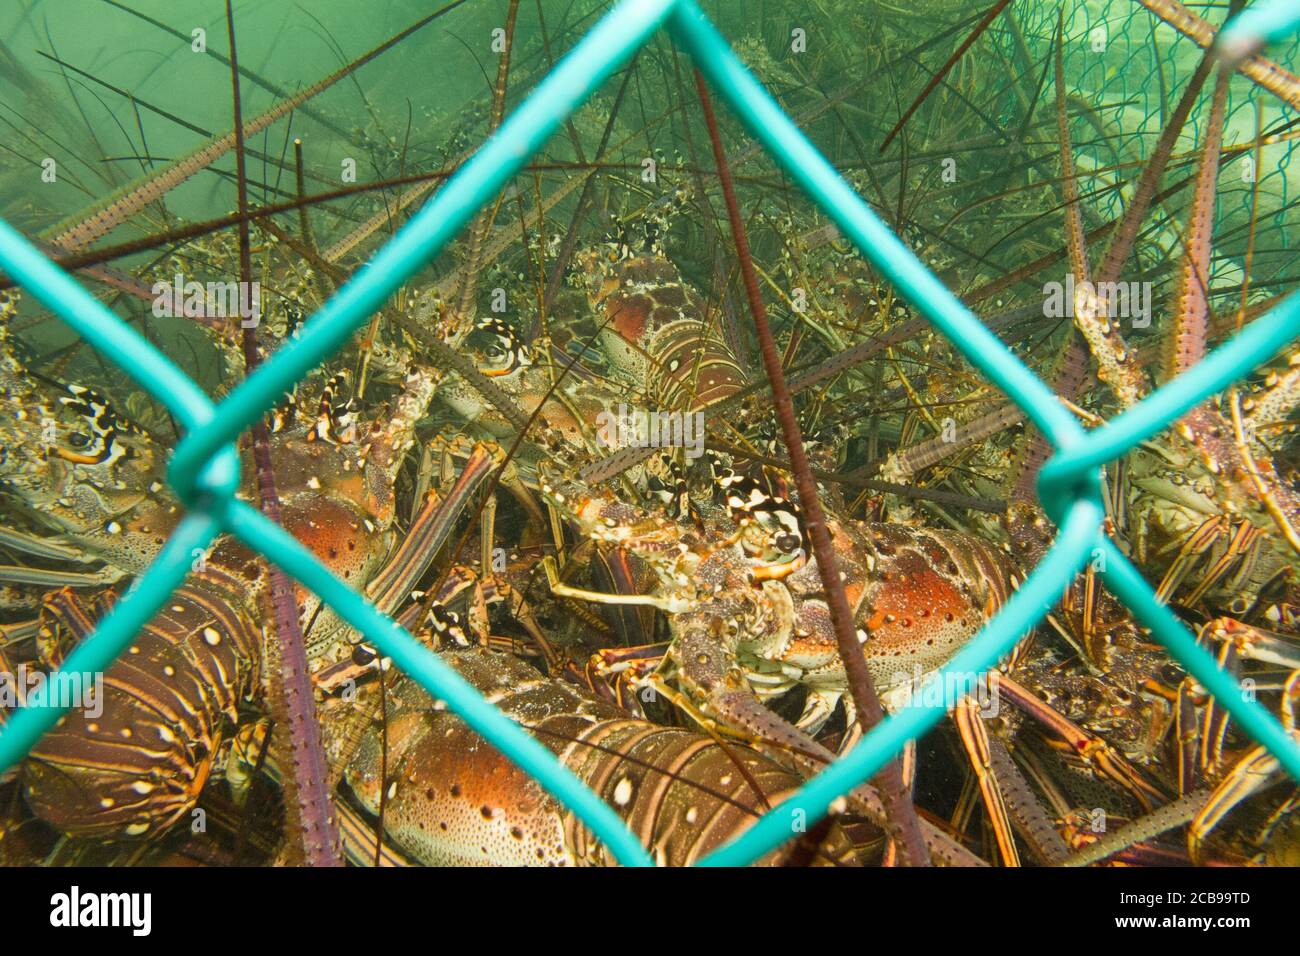 Stacheliger Hummer (Panulirus argus) aus den karibischen Riffen, Mexiko. Stockfoto